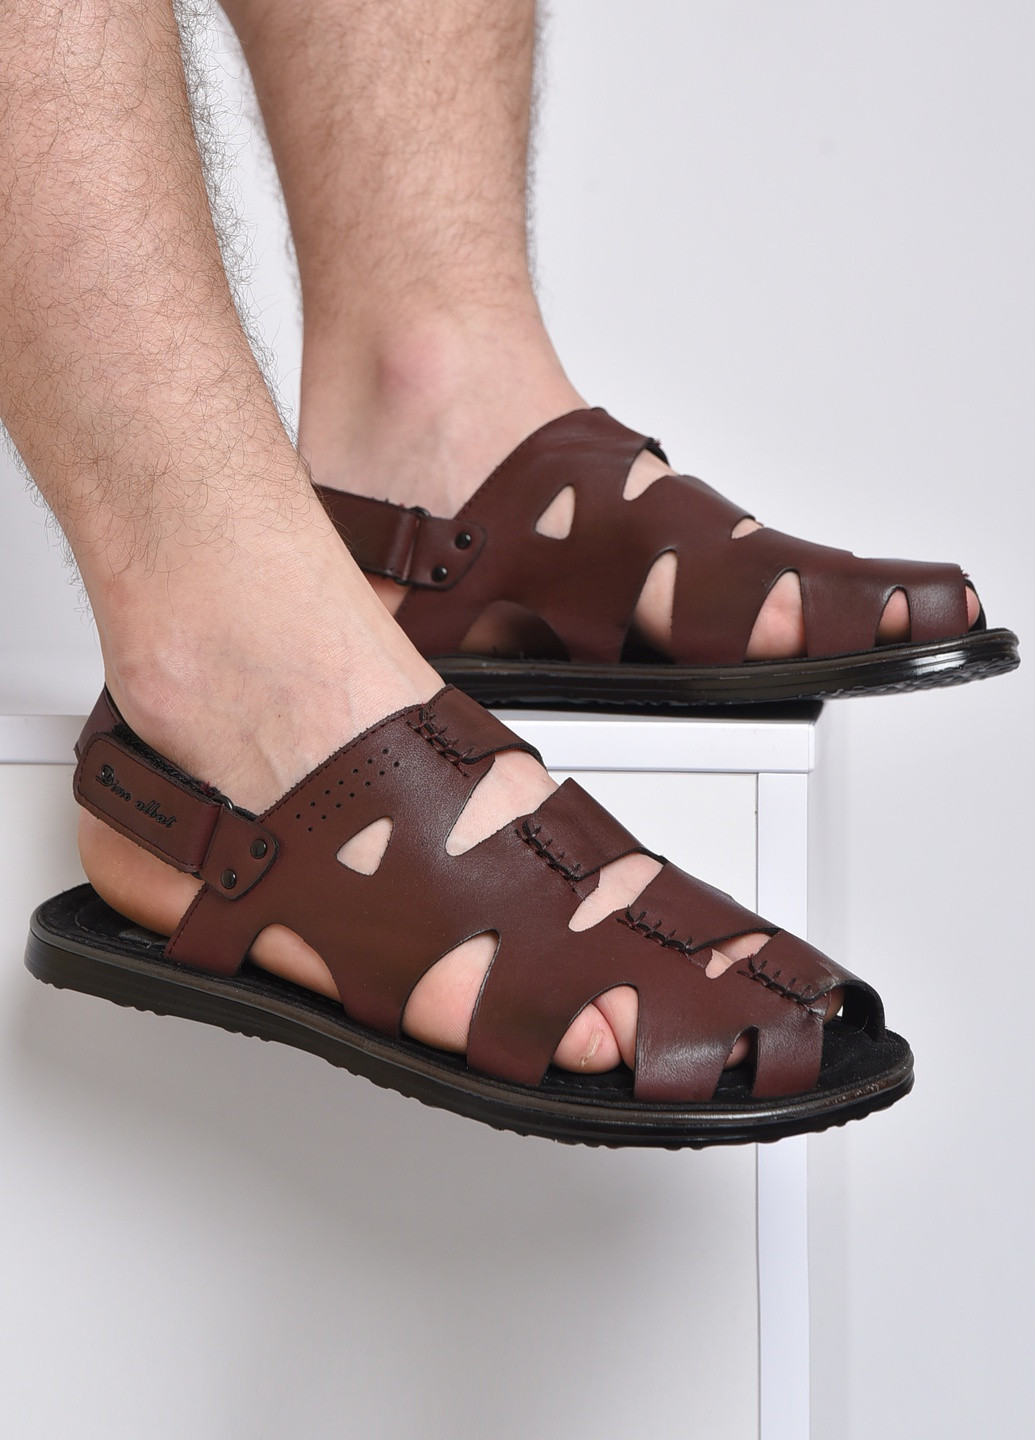 Пляжные сандалии мужские темно-бордового цвета на липучке Let's Shop на липучке